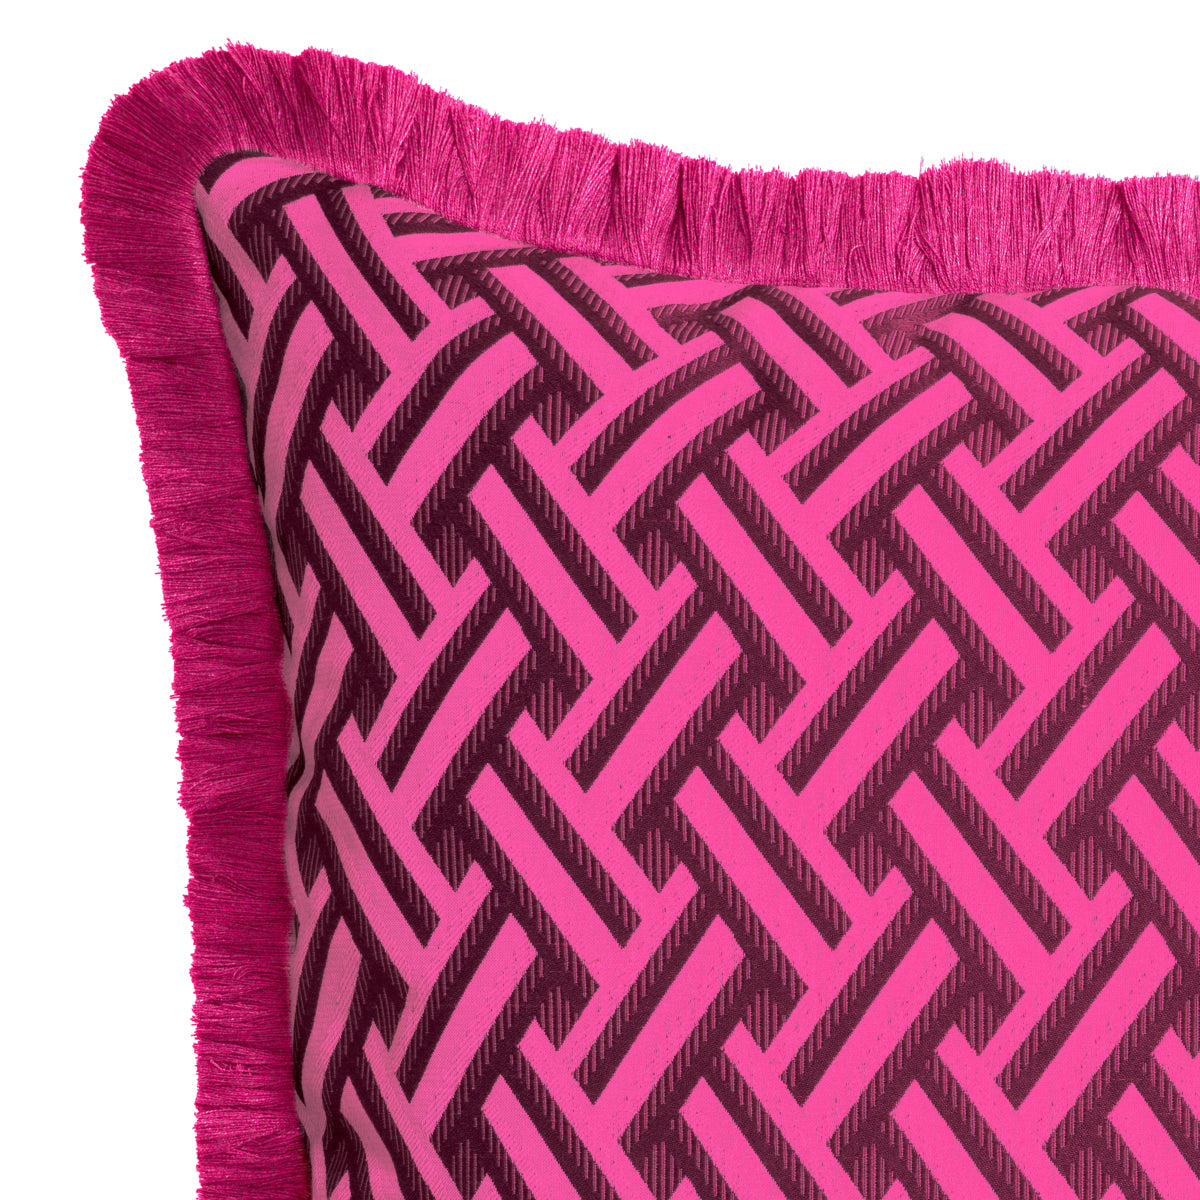 sierkussen eichholtz Doris pink s cushion fuchsia donkerroze